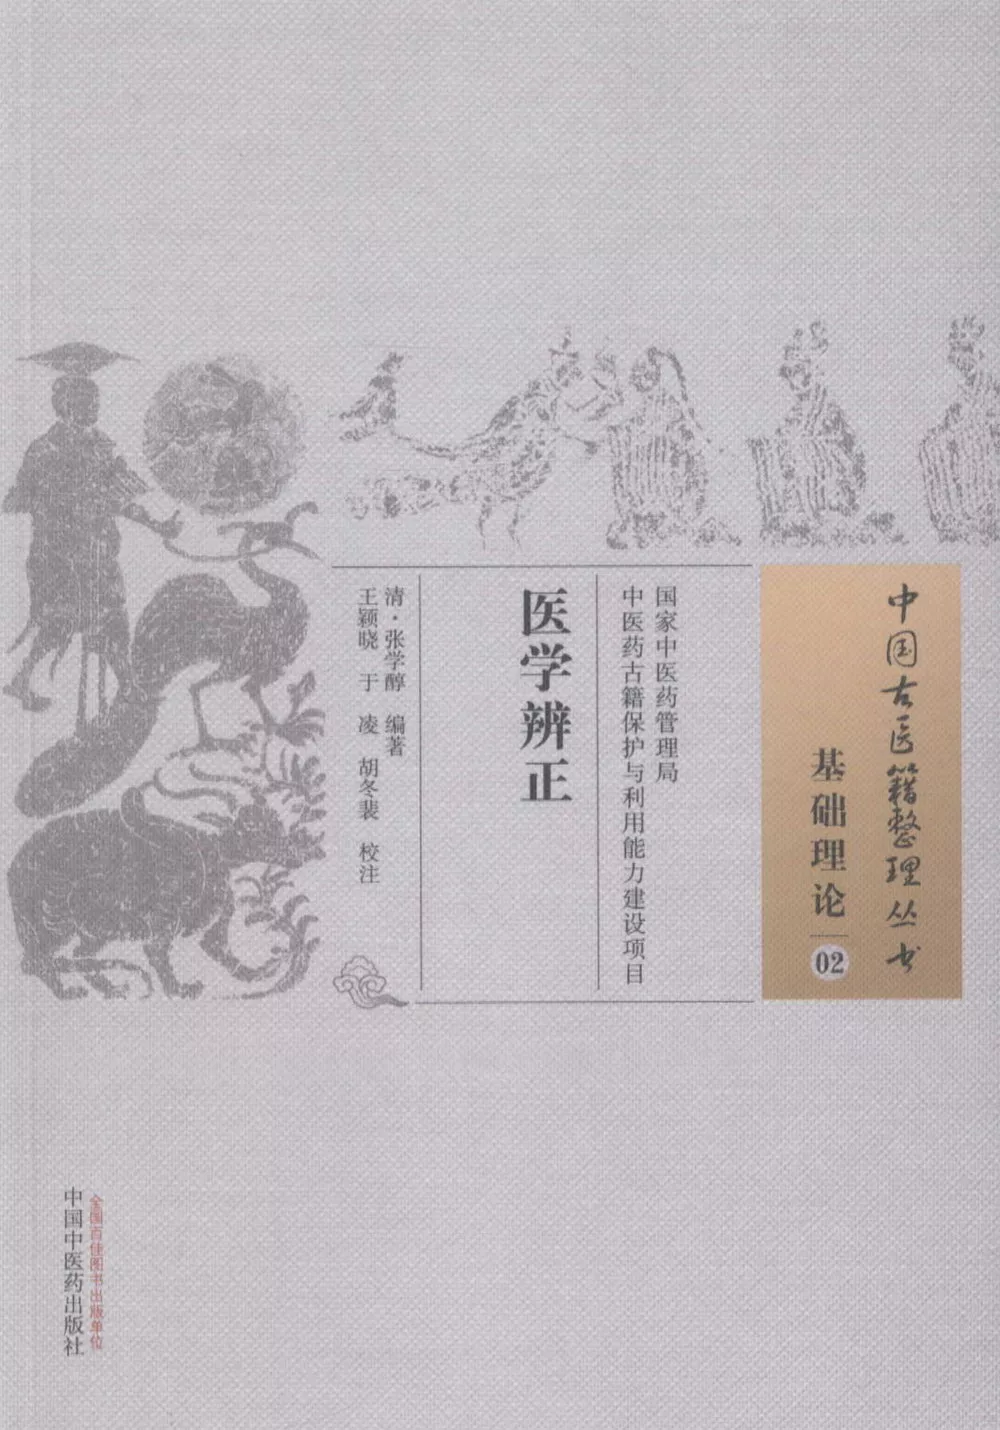 中國古醫籍整理叢書：基礎理論（02），醫學辨正